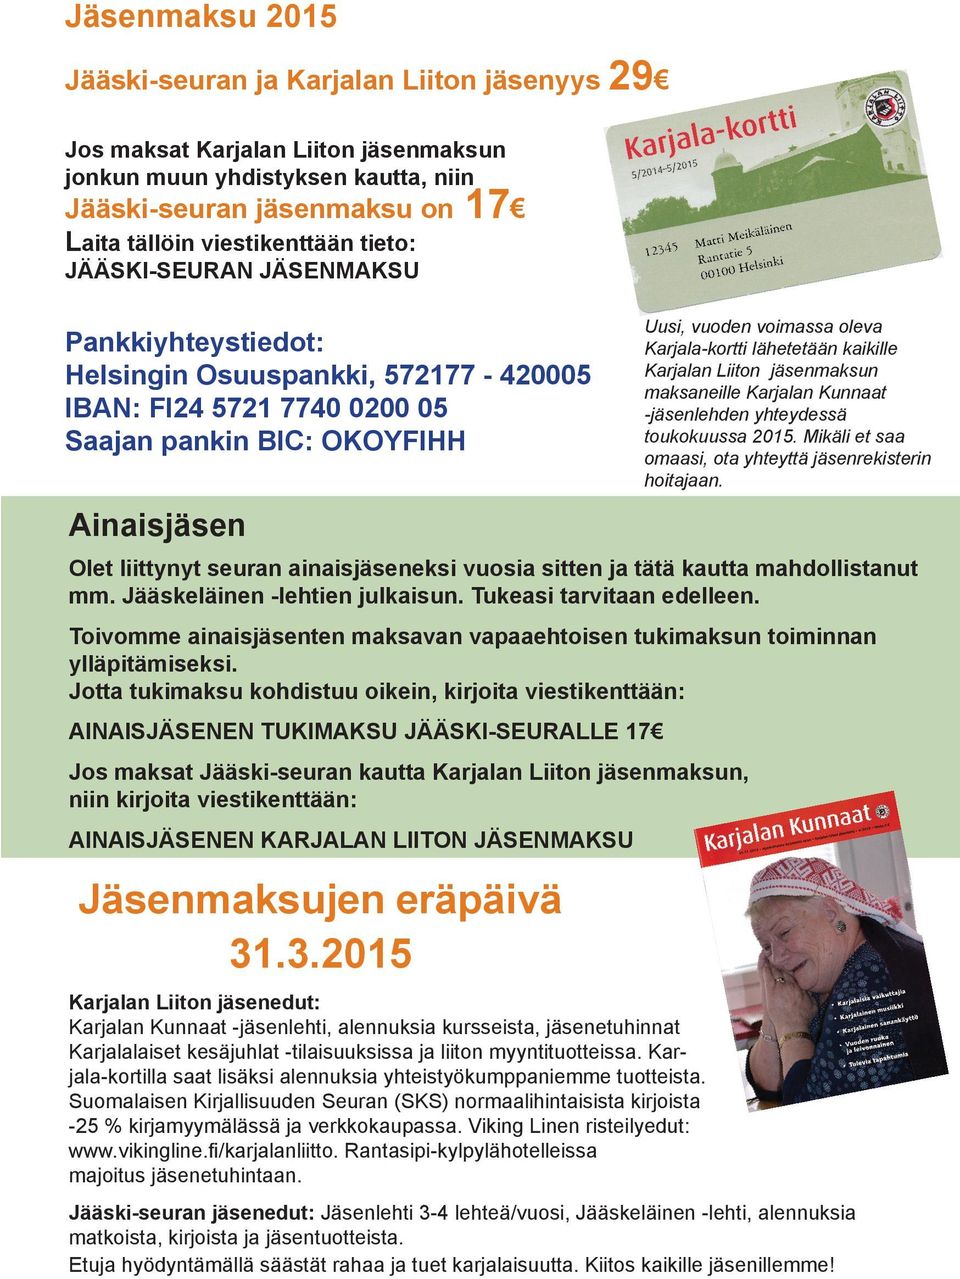 Kunnaat -jäsenlehti, alennuksia kursseista, jäsenetuhinnat Karjalalaiset kesäjuhlat -tilaisuuksissa ja liiton myyntituotteissa.